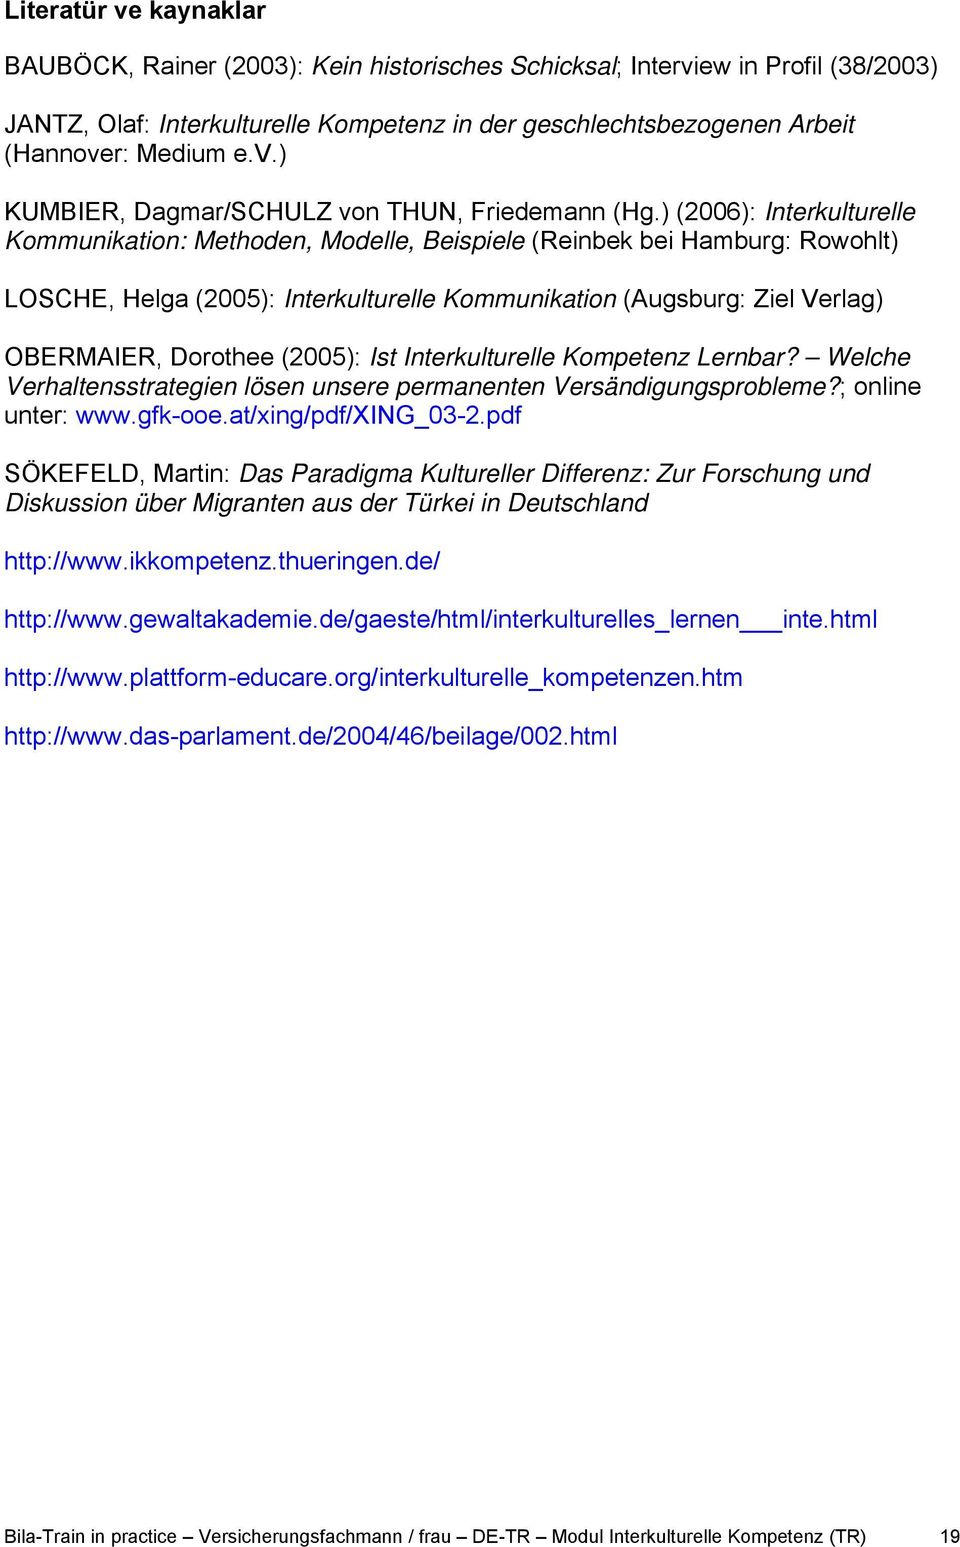 ) (2006): Interkulturelle Kommunikation: Methoden, Modelle, Beispiele (Reinbek bei Hamburg: Rowohlt) LOSCHE, Helga (2005): Interkulturelle Kommunikation (Augsburg: Ziel Verlag) OBERMAIER, Dorothee